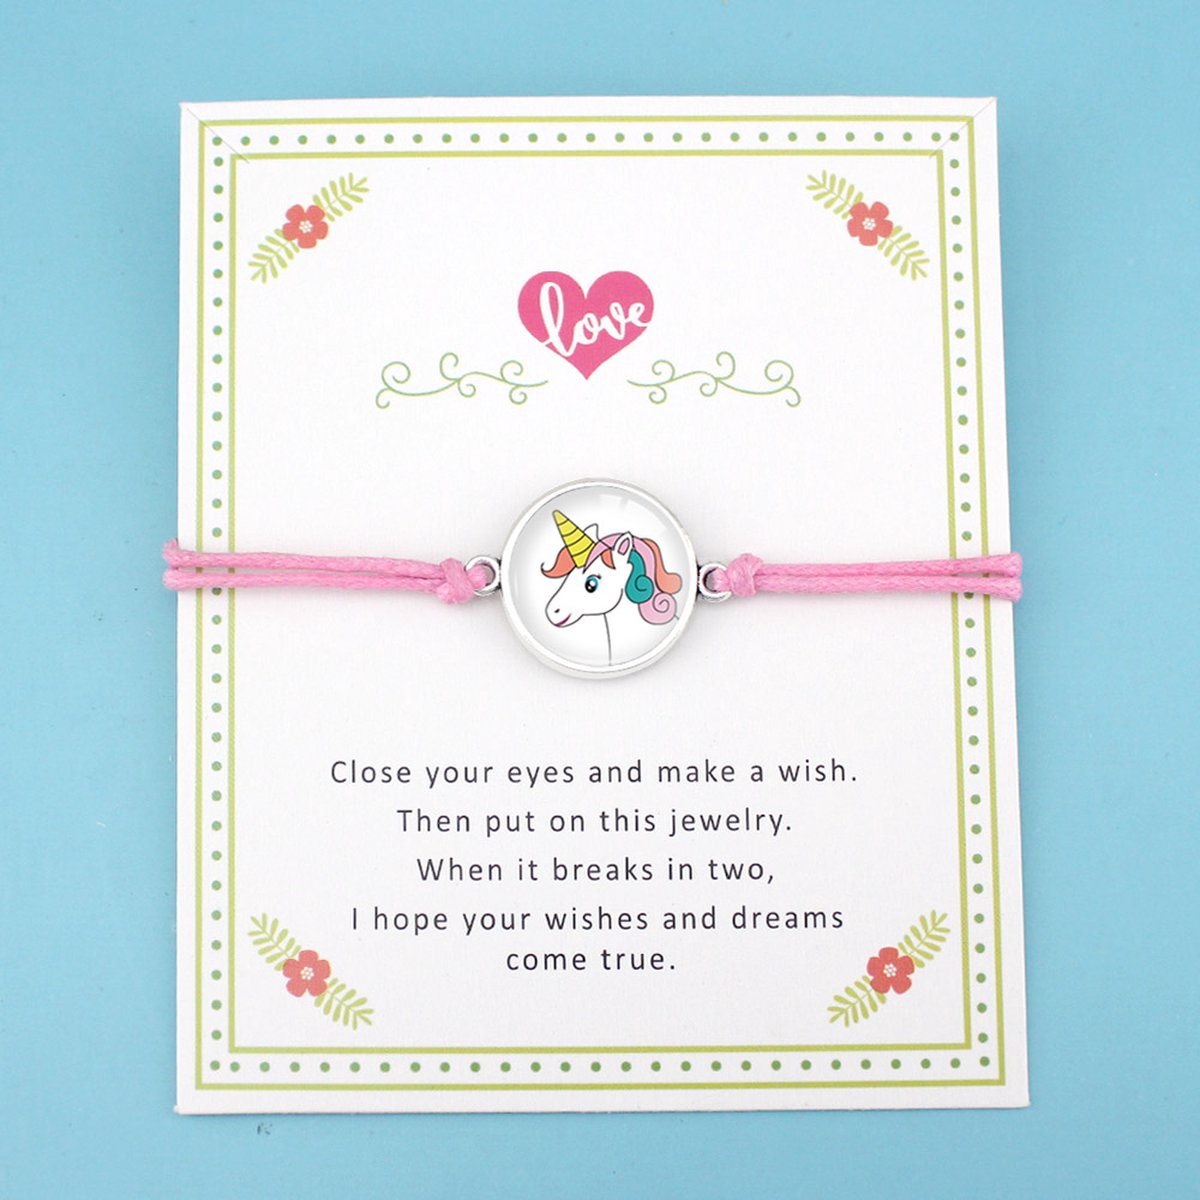 Manks Kids Collections ® Roze Armband, Love armband - vriendinnen armband - cadeau voor een vriendin - Zilverig armband met een Witte Eenhoorn - Armband 30 cm